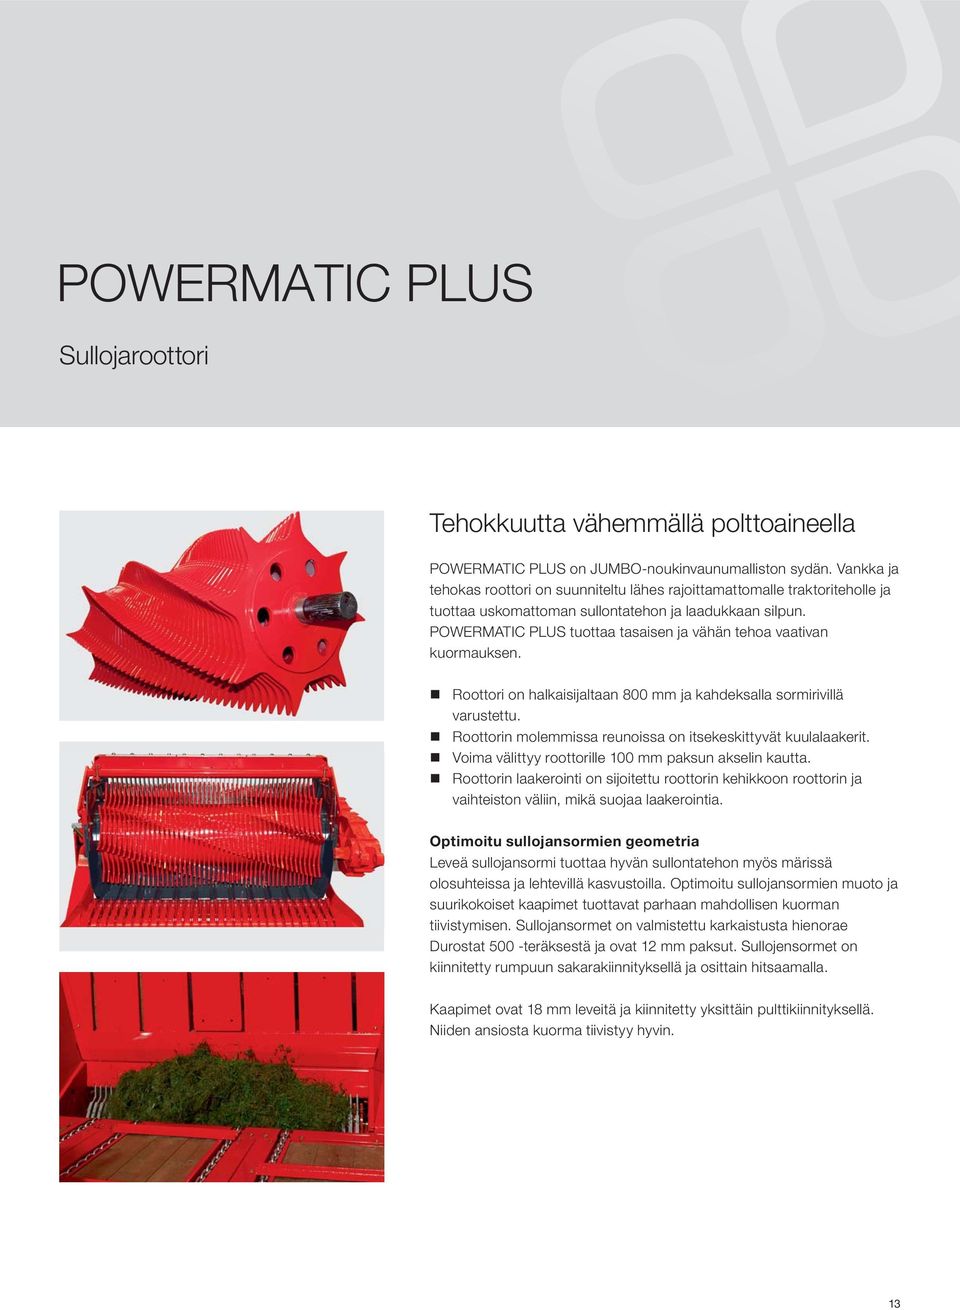 POWERMATIC PLUS tuottaa tasaisen ja vähän tehoa vaativan kuormauksen. Roottori on halkaisijaltaan 800 mm ja kahdeksalla sormirivillä varustettu.